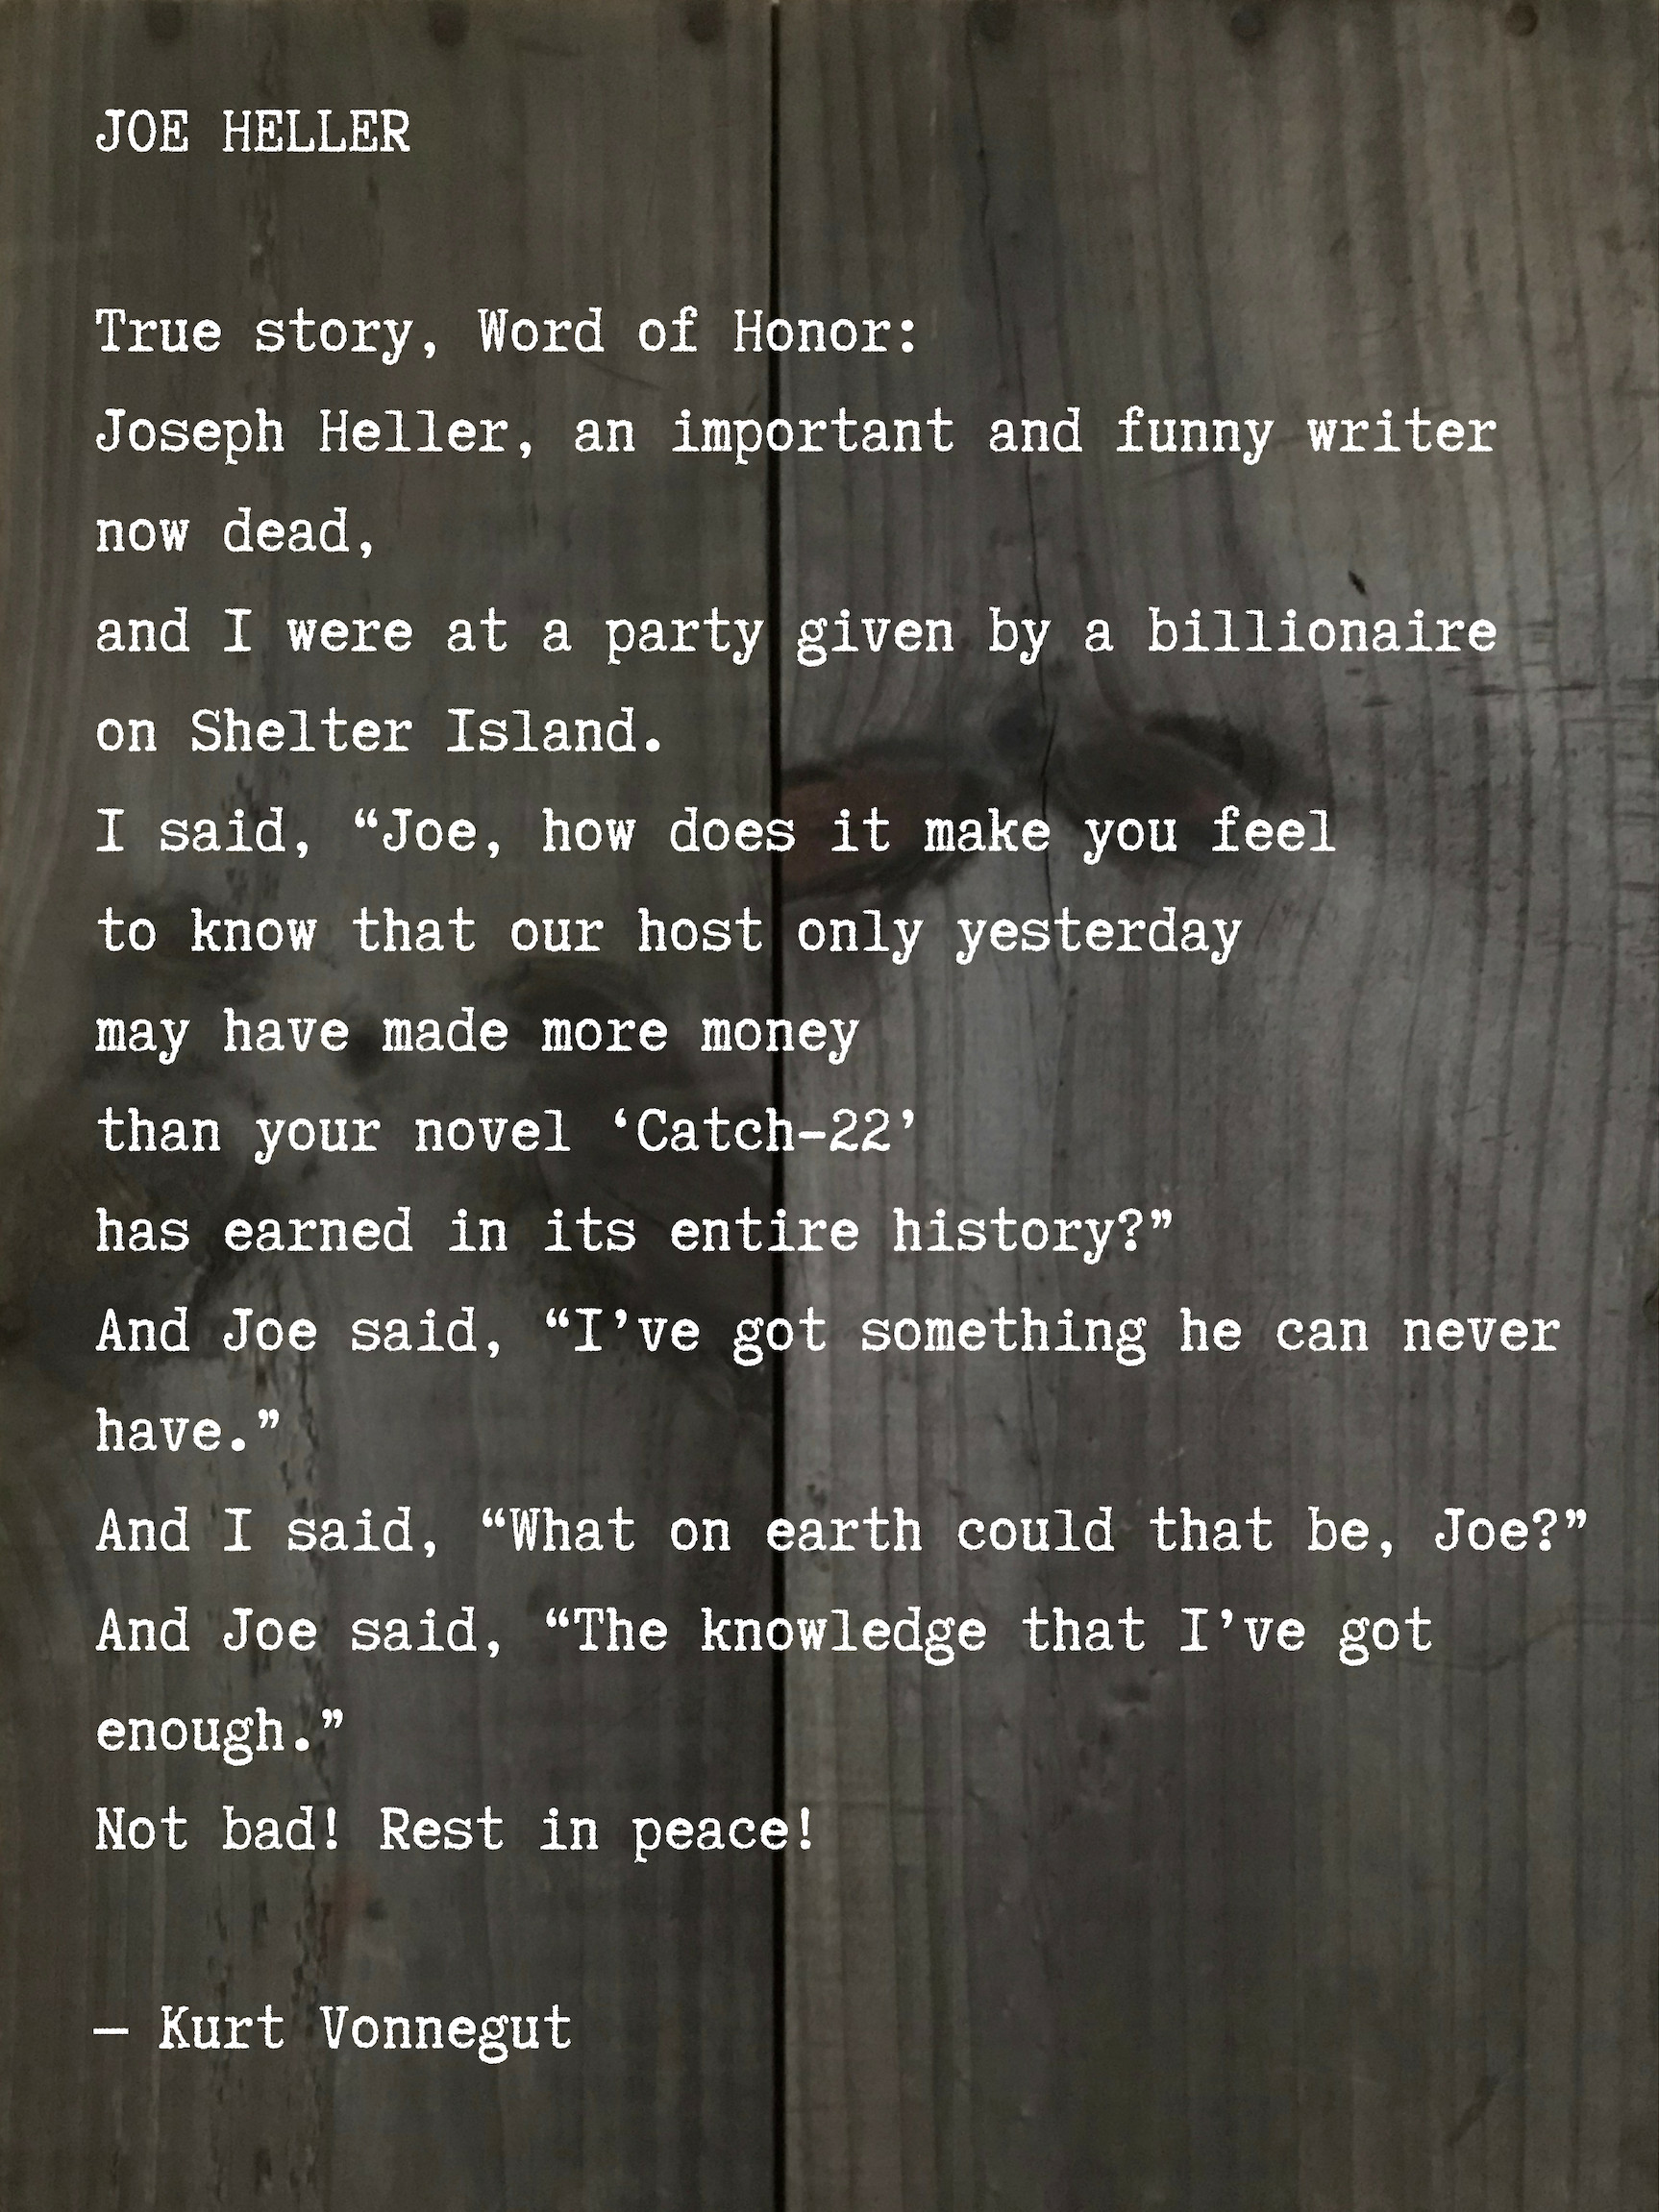 Kurt Vonnegut poem about Joseph Heller